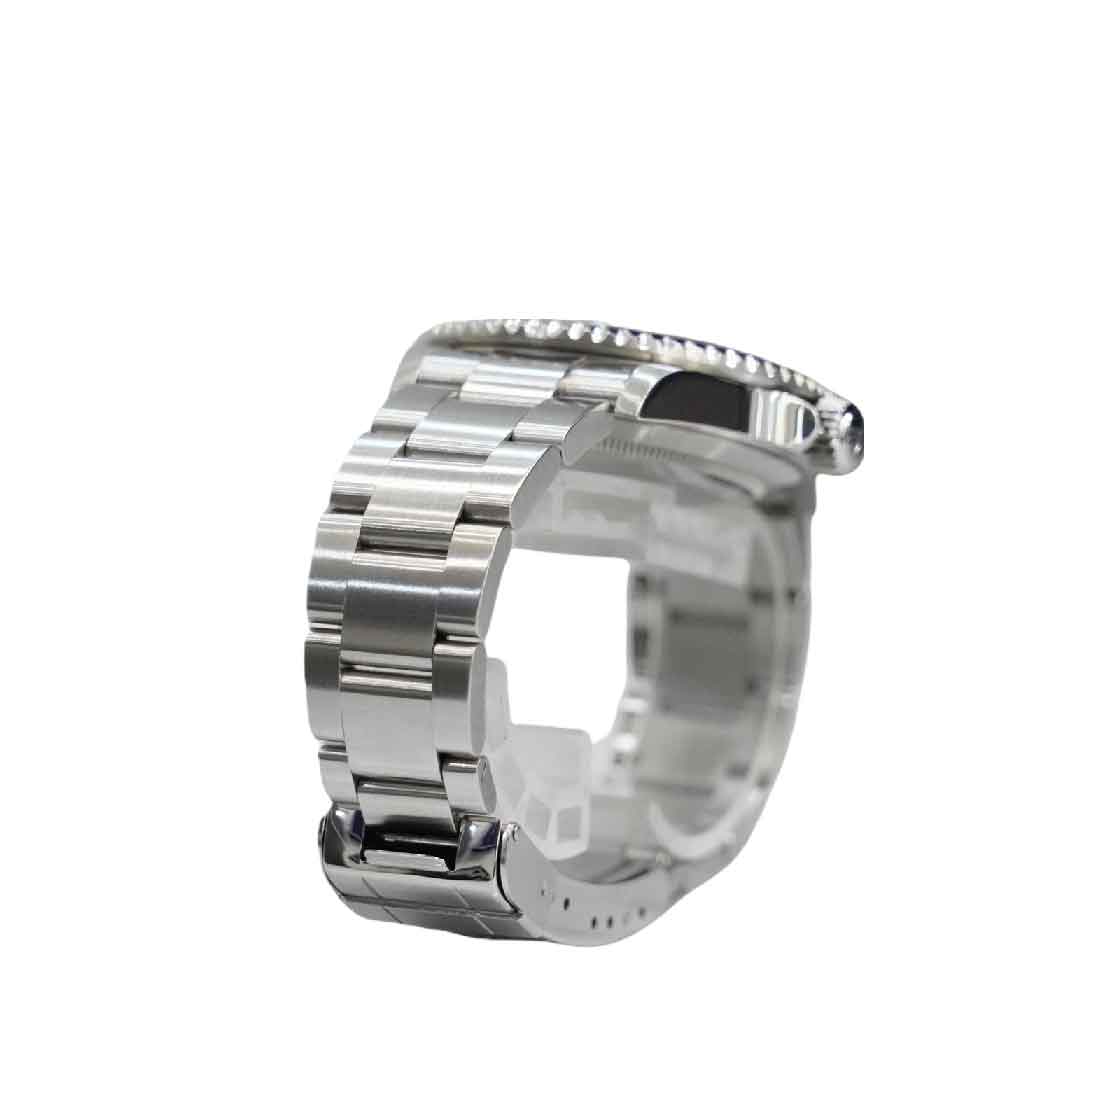 Rolex Black Submariner Date Stainless Steel Watch Ref 16610